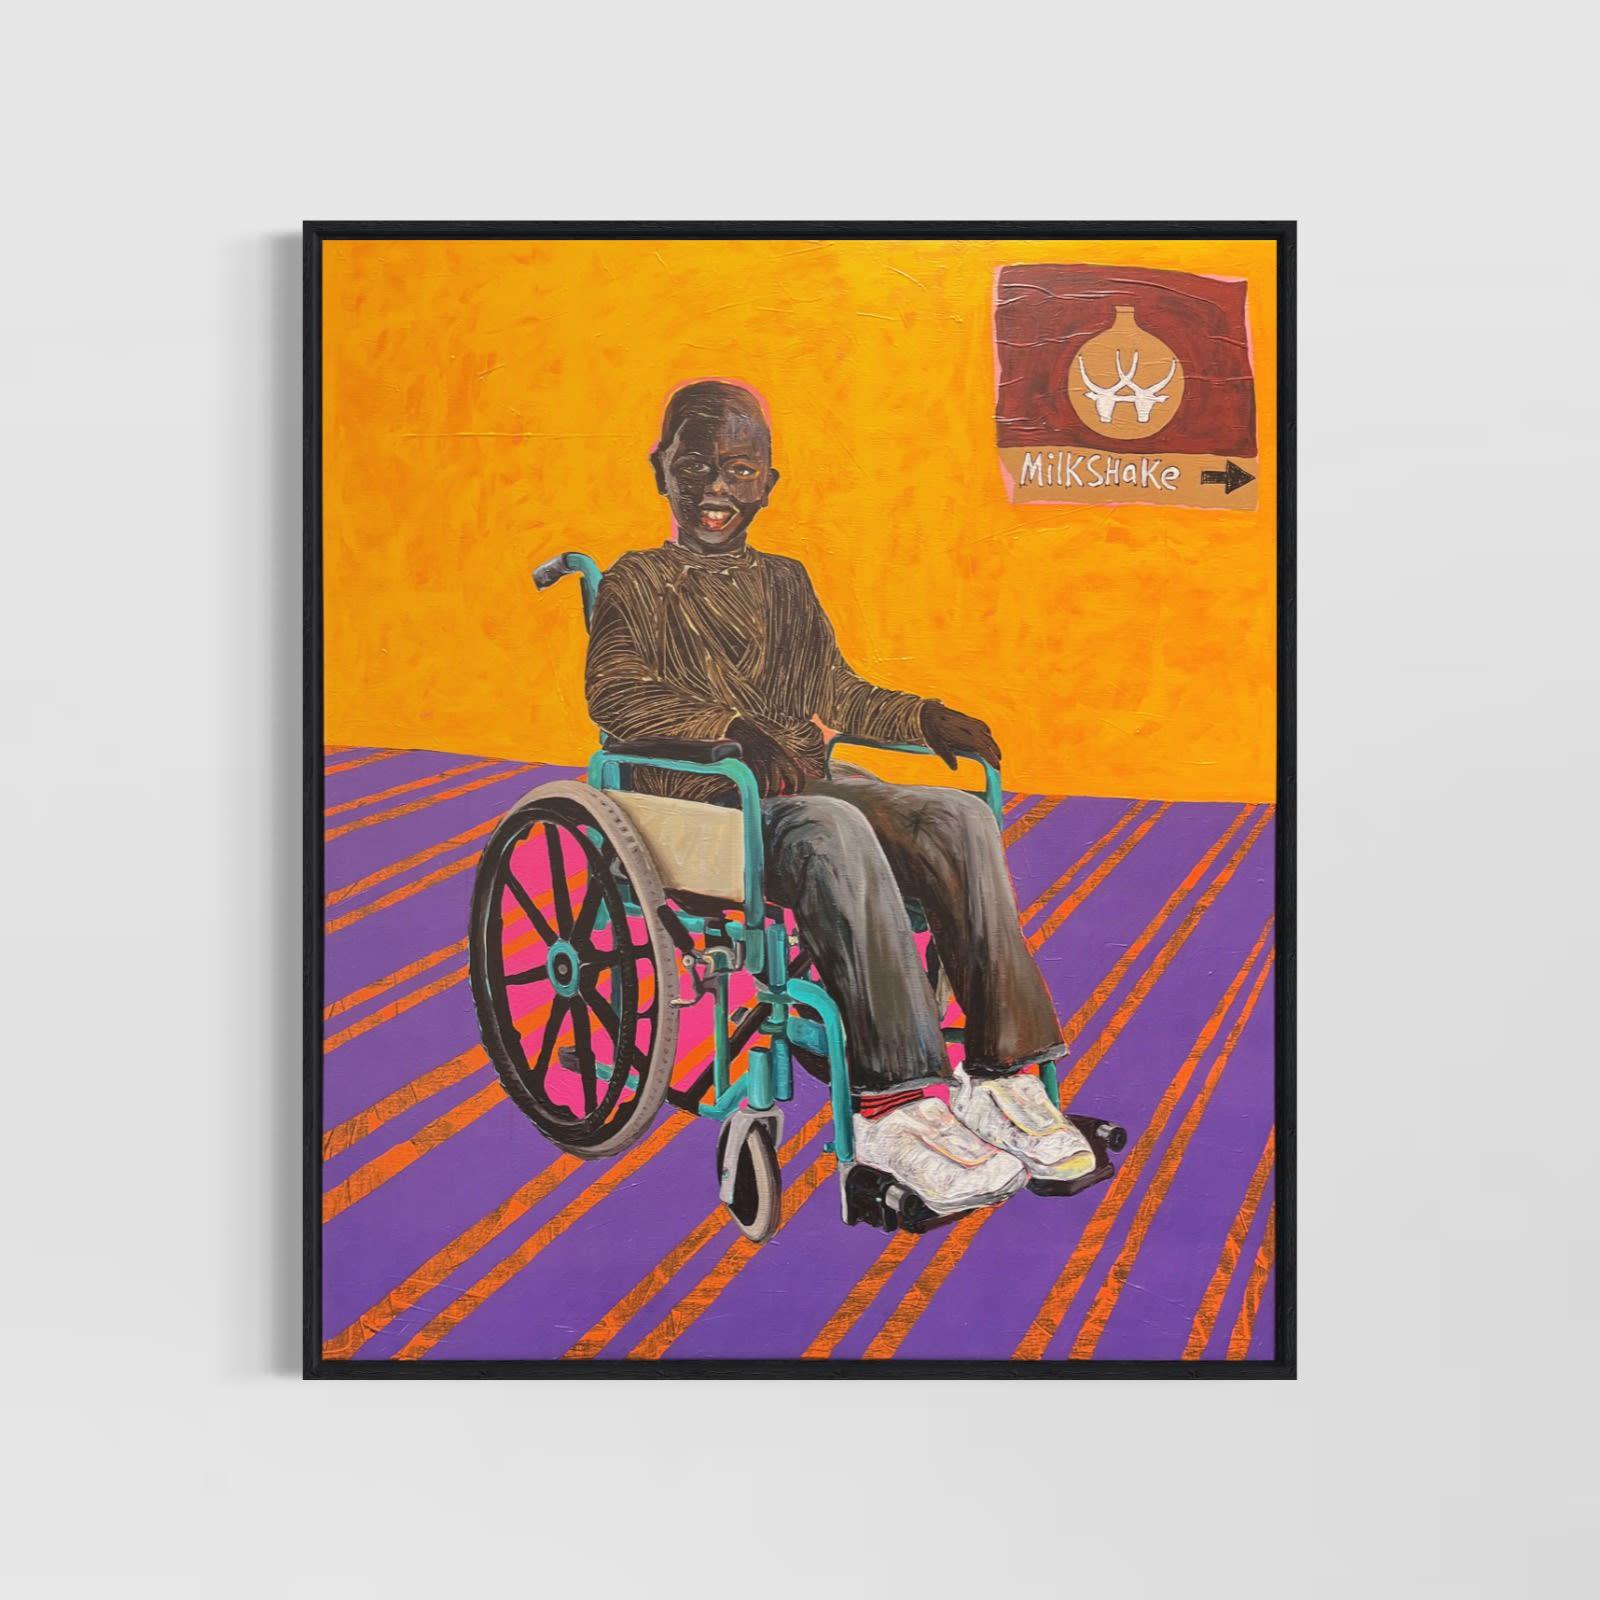 Junge im Rollstuhl, 2022
von Collin Sekajugo
3D-Druck, Silikon auf Leinwand, aufgezogen auf Dibond
Signiert und nummeriert vom Künstler auf der Rückseite des Kunstwerks
Auflage von 35
Gerahmt (Holz)
In neuwertigem Zustand (wie vom Verlag